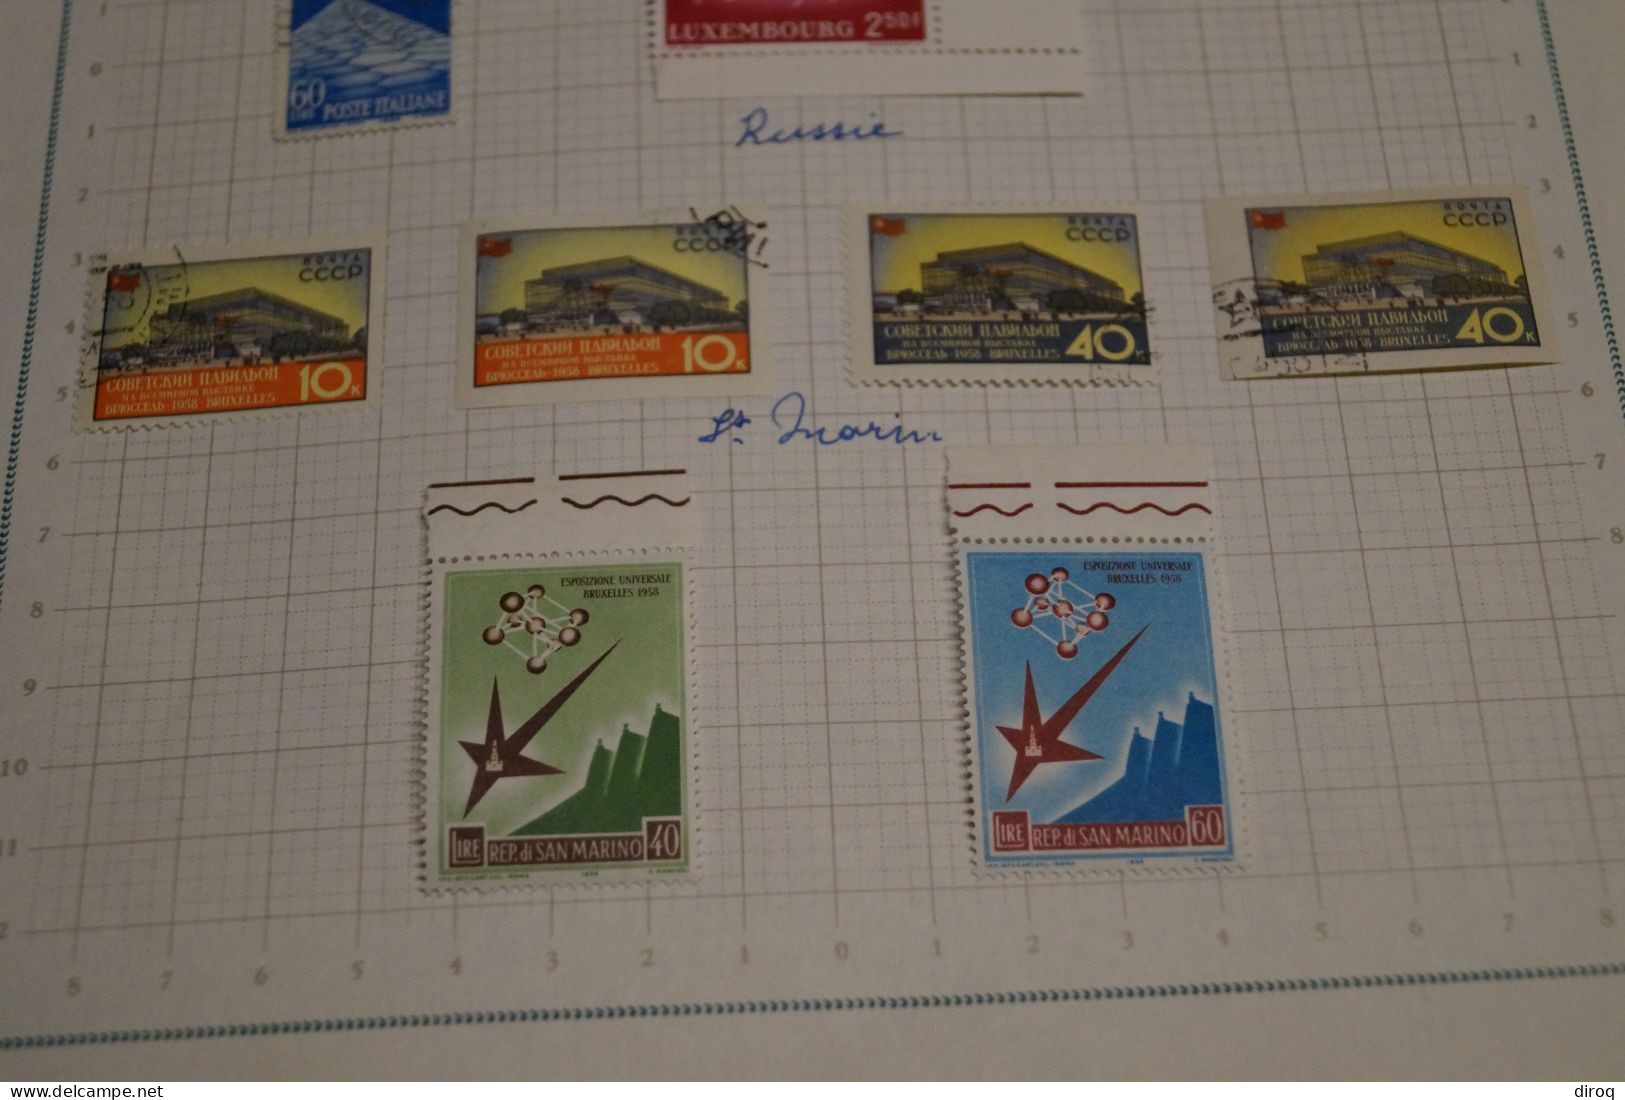 Expo 58 Bruxelles,36 Timbres,neuf Et Certains Oblitérés,voir Photos,superbe état ,sur Charnière,voir Photos - Unused Stamps